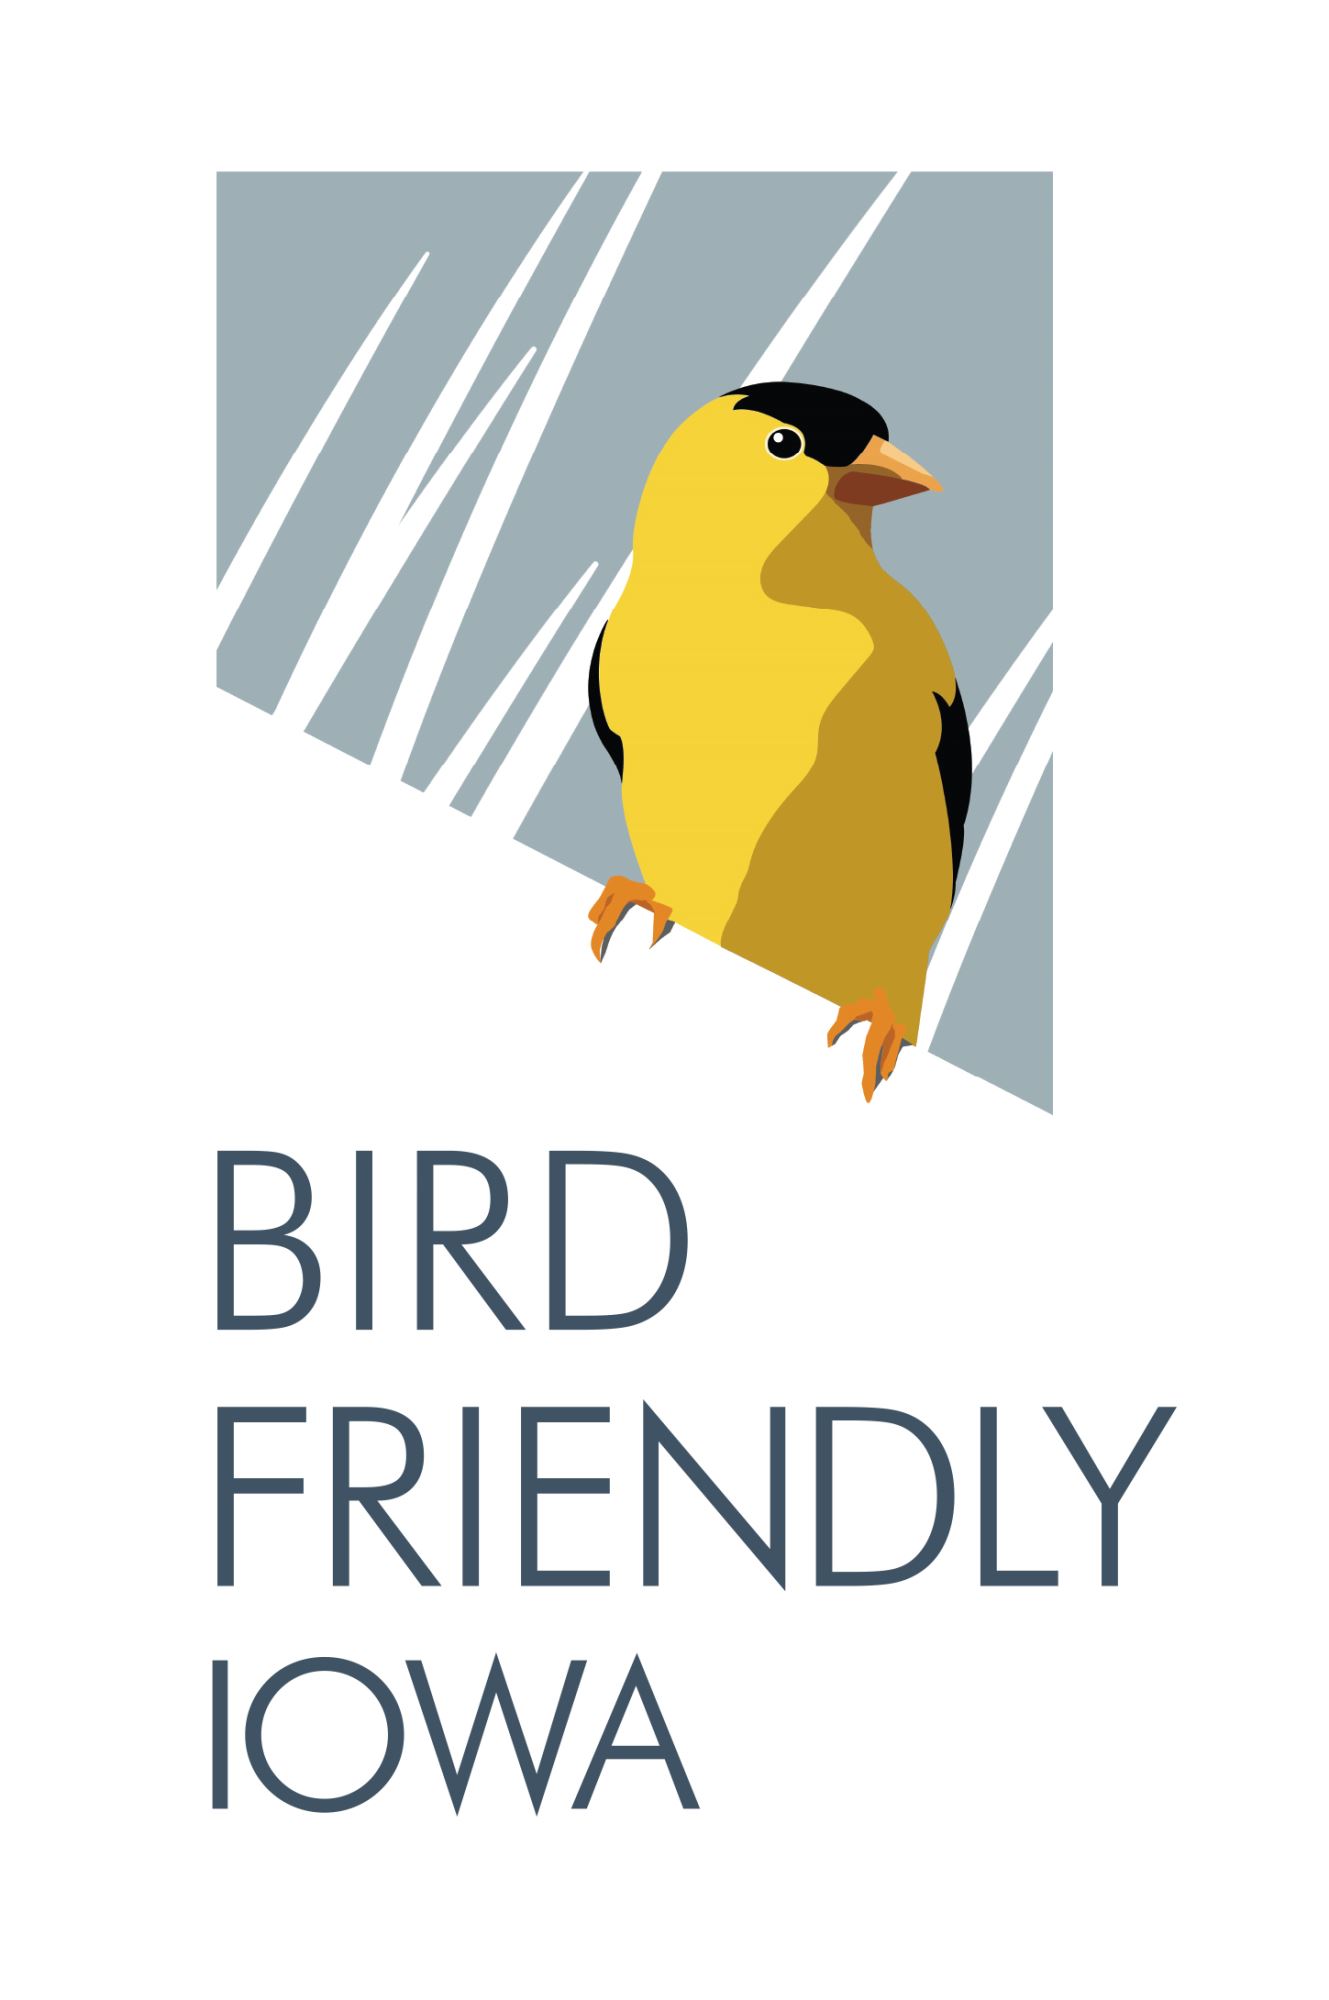 Bird Friendly Iowa Goldfinch Logo